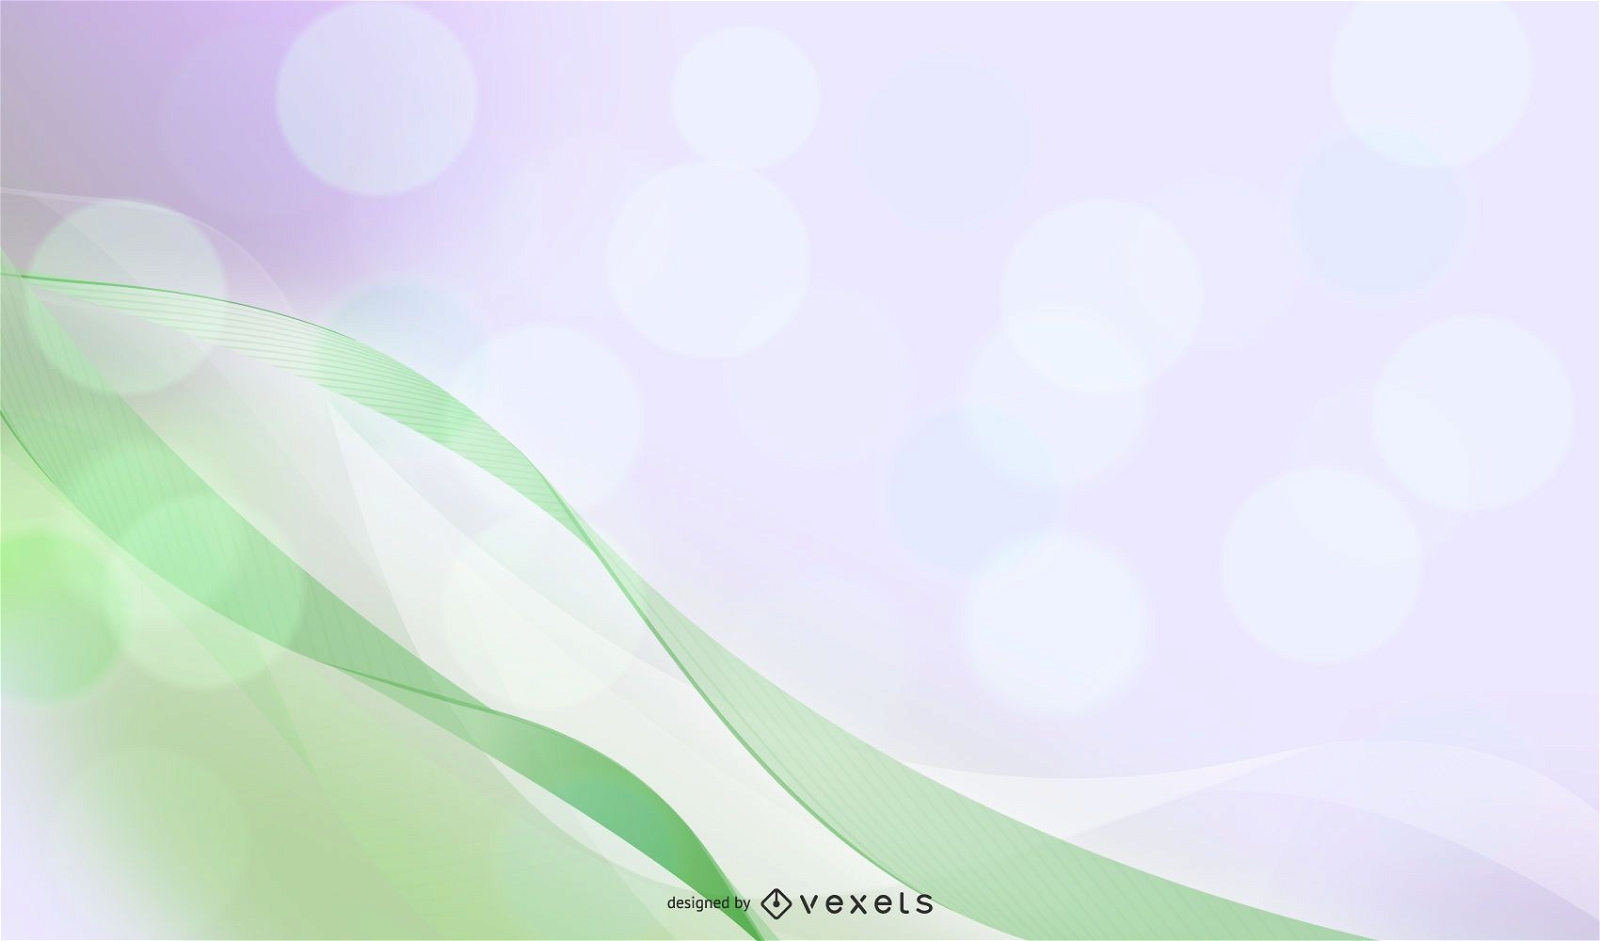 Vector hình nền sóng màu xanh lá cây (Green background vector download): Với màu sắc tươi sáng và sống động, hình nền sóng màu xanh lá cây sẽ đem lại cho bạn cảm giác thư thái, năng lượng và tươi mới mỗi khi sử dụng máy tính. Hãy tải ngay hình nền này để trang trí cho desktop của bạn thêm sống động và nổi bật hơn.